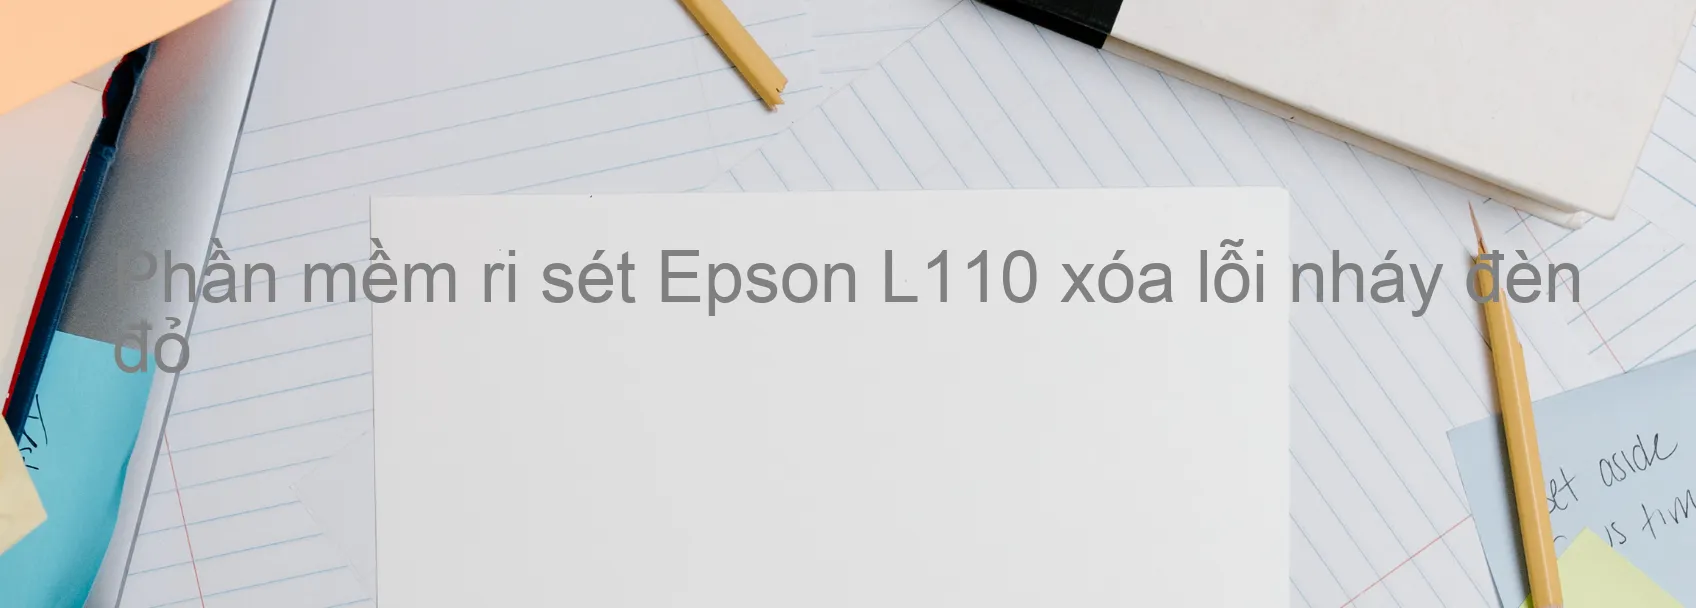 Phần mềm reset Epson L110 xóa lỗi nháy đèn đỏ